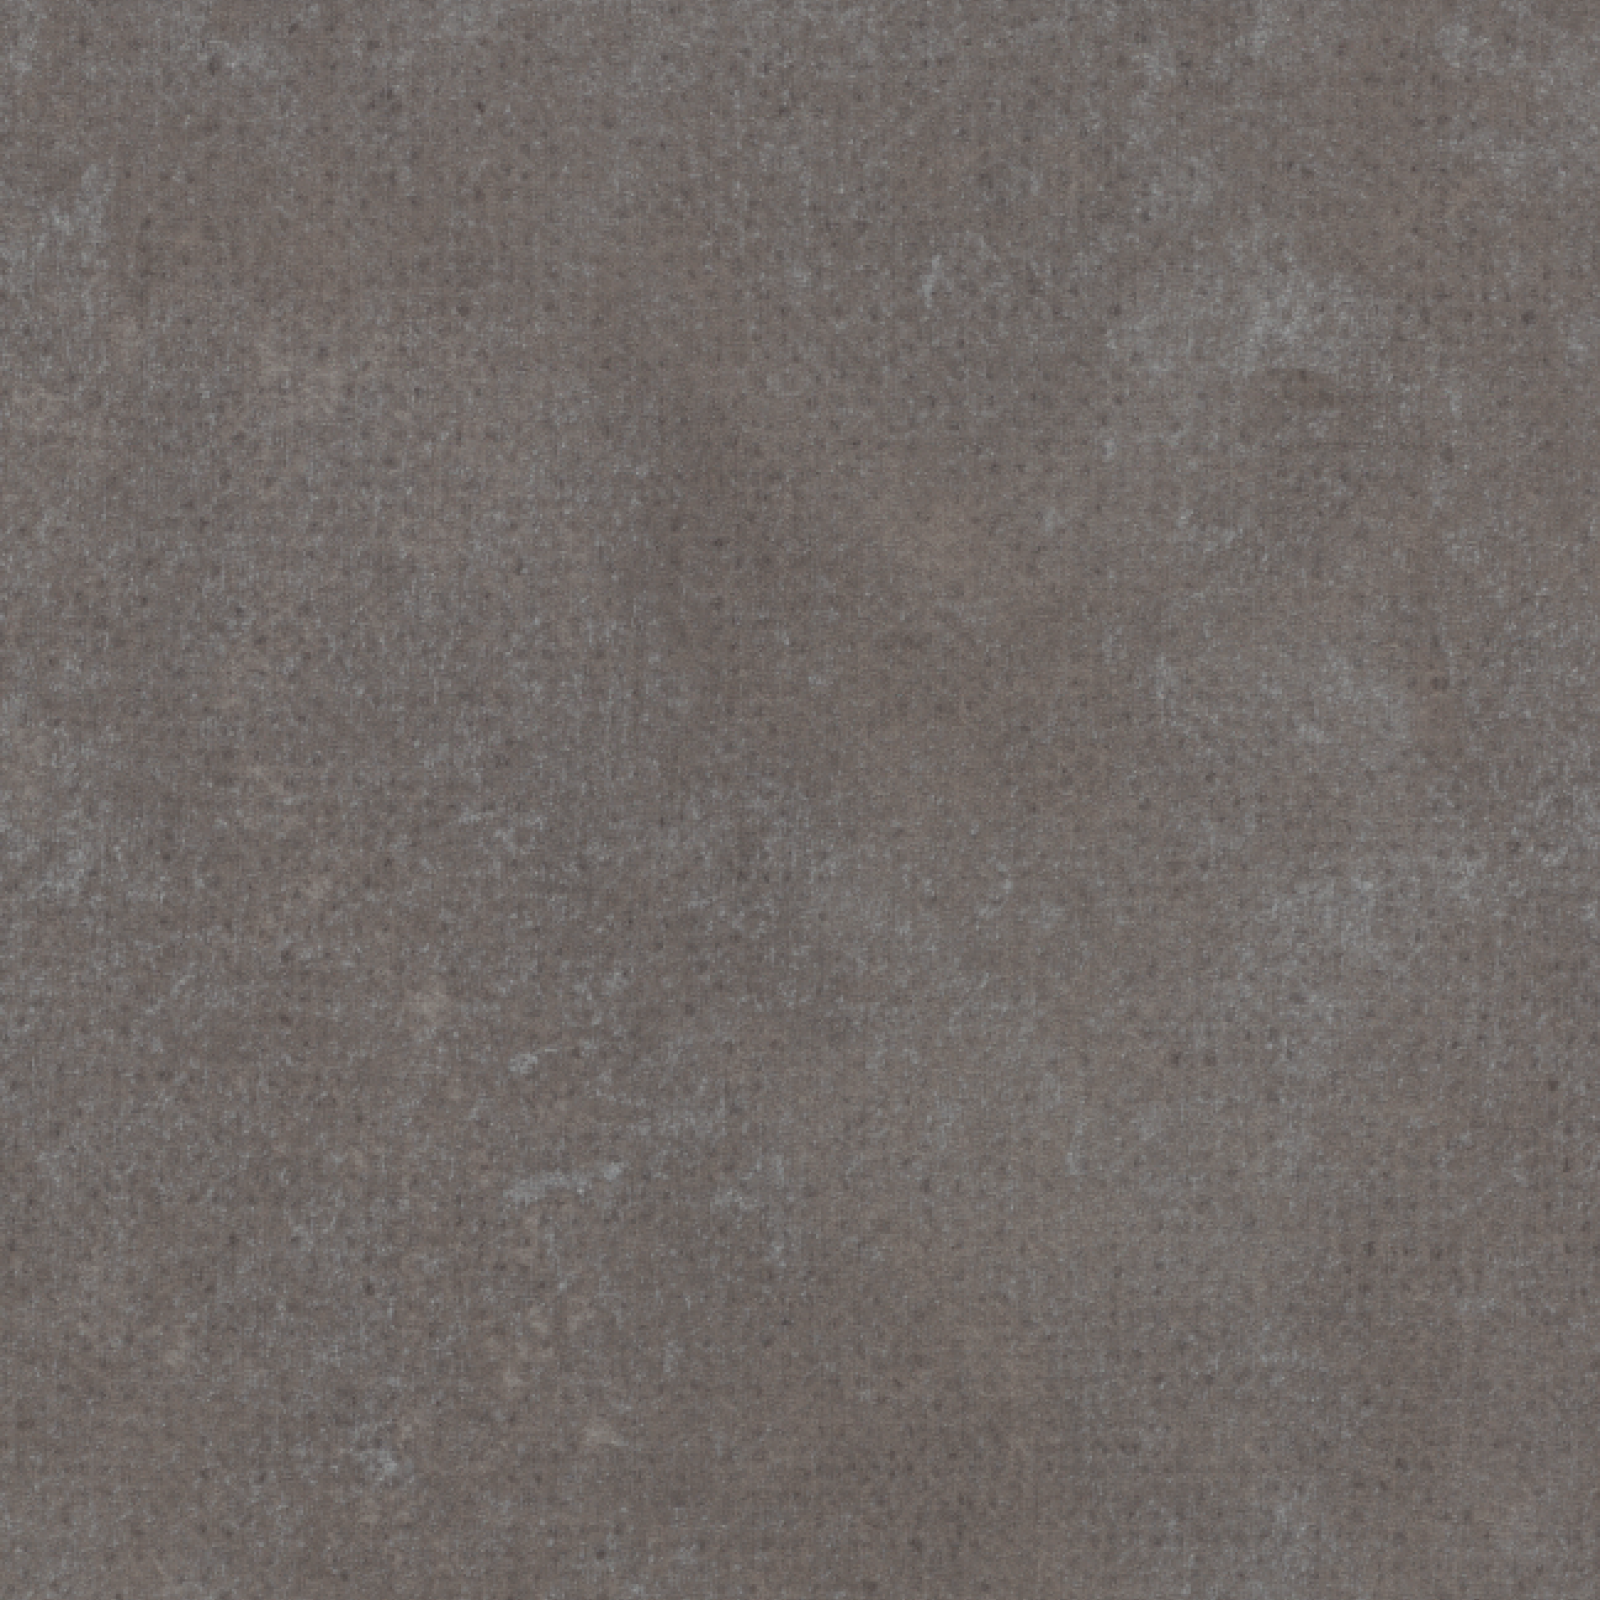 Vzor - 12422 grey textured concrete